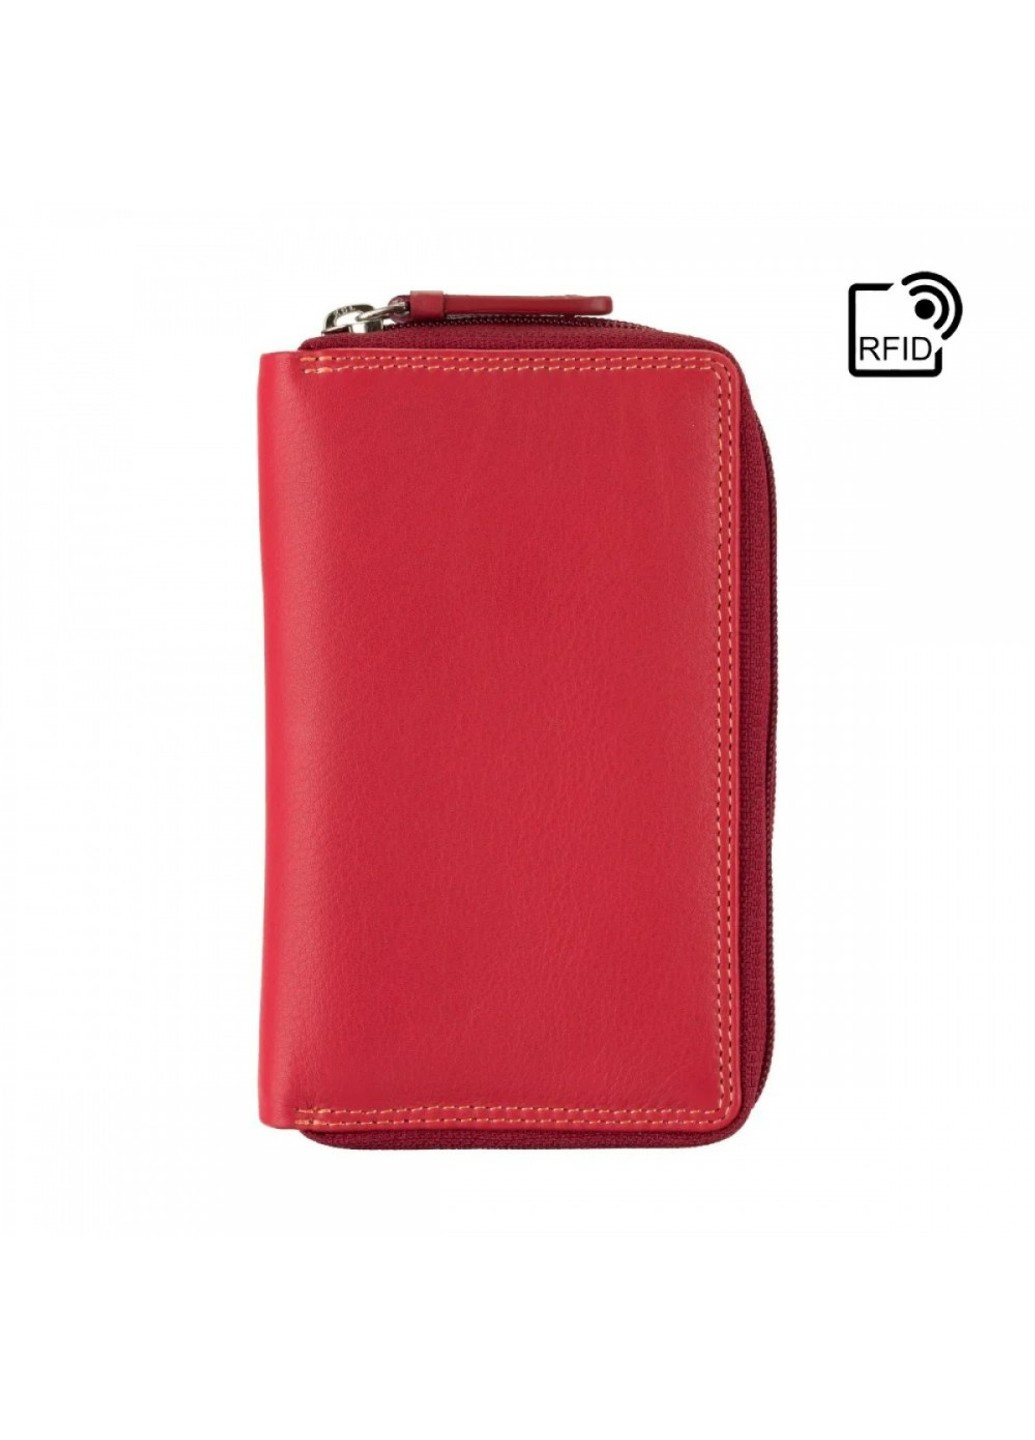 Жіночий шкіряний гаманець із RFID захистом RB98 Aruba (Red Multi) Visconti (276456840)